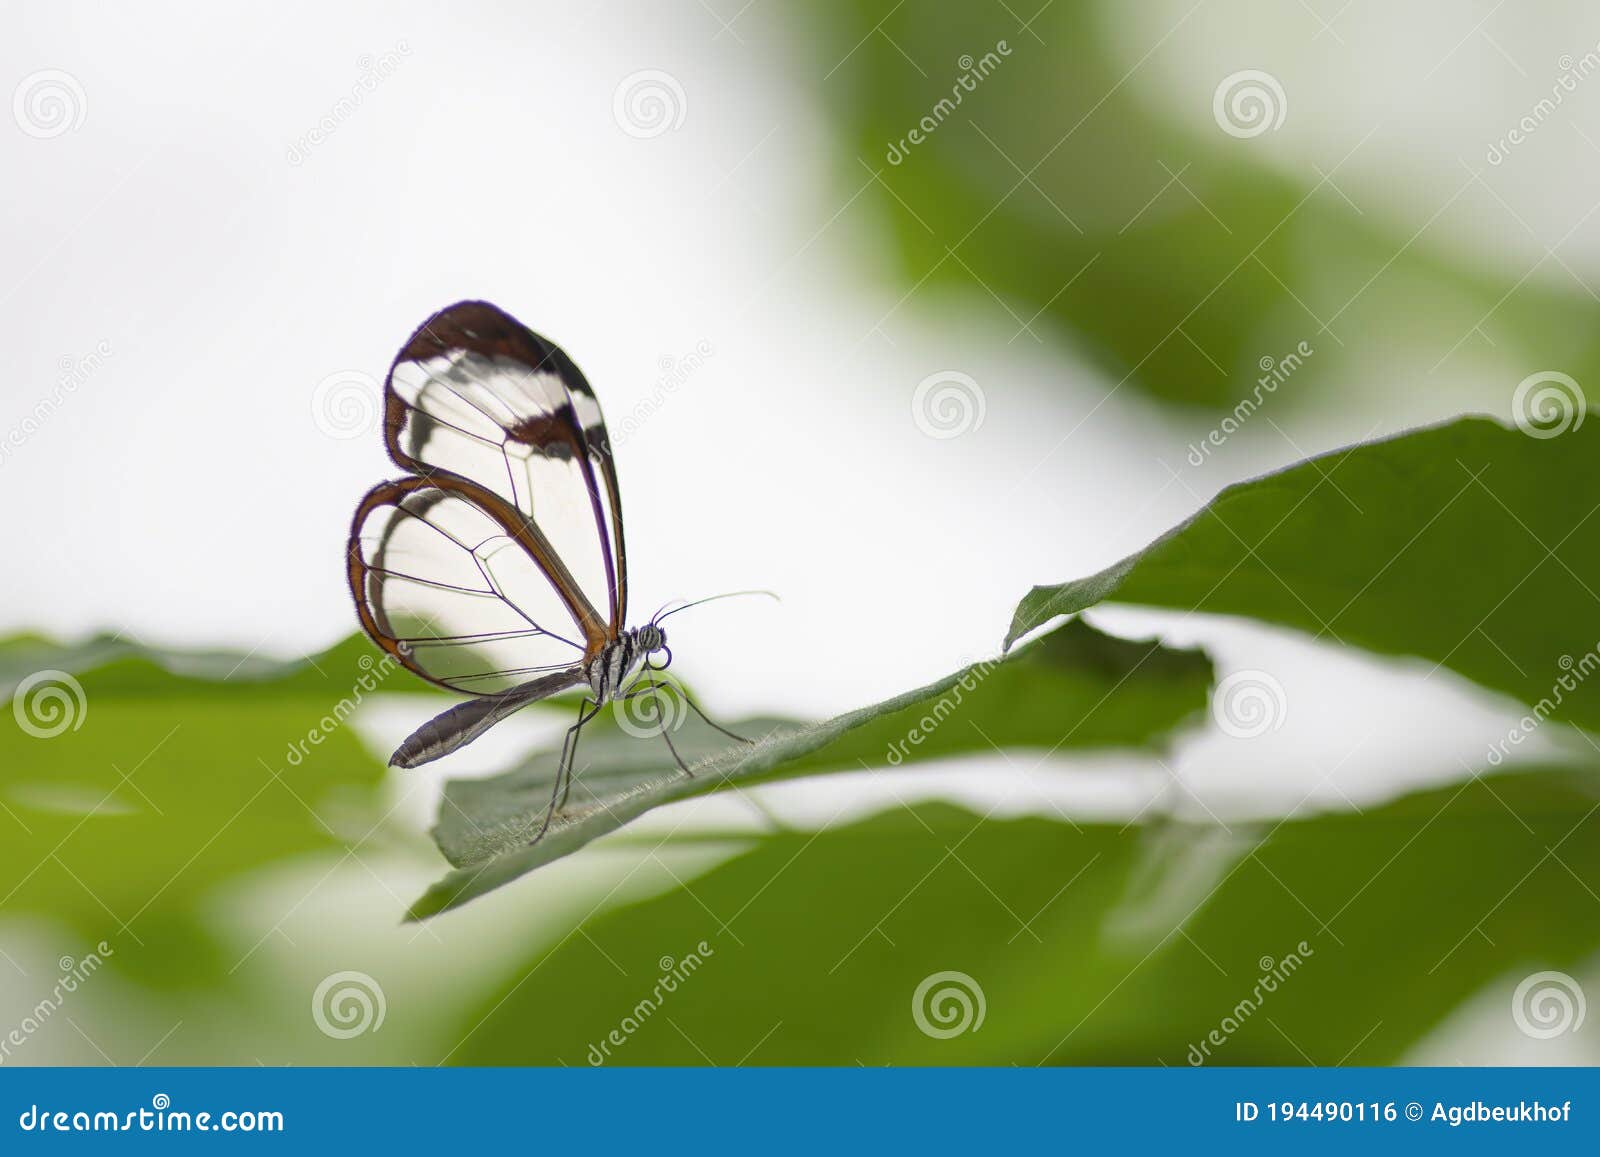 beautiful glasswing butterfly greta oto on a leaf in a summer garden.